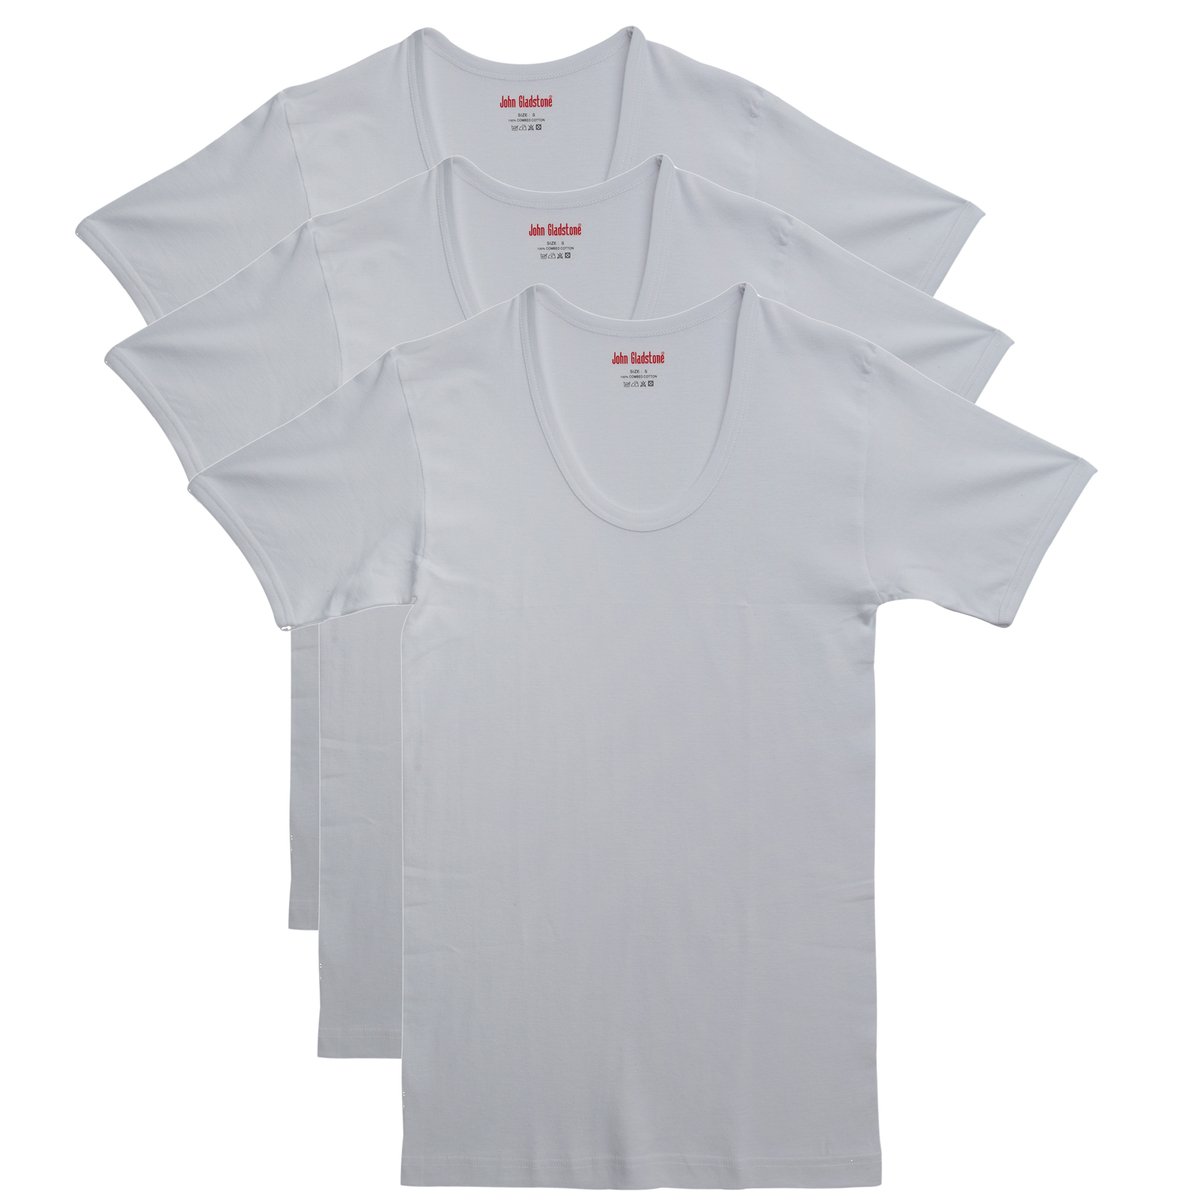 John Gladstone Men's Inner T-Shirt (U-Neck) 3Pc Pack White Medium